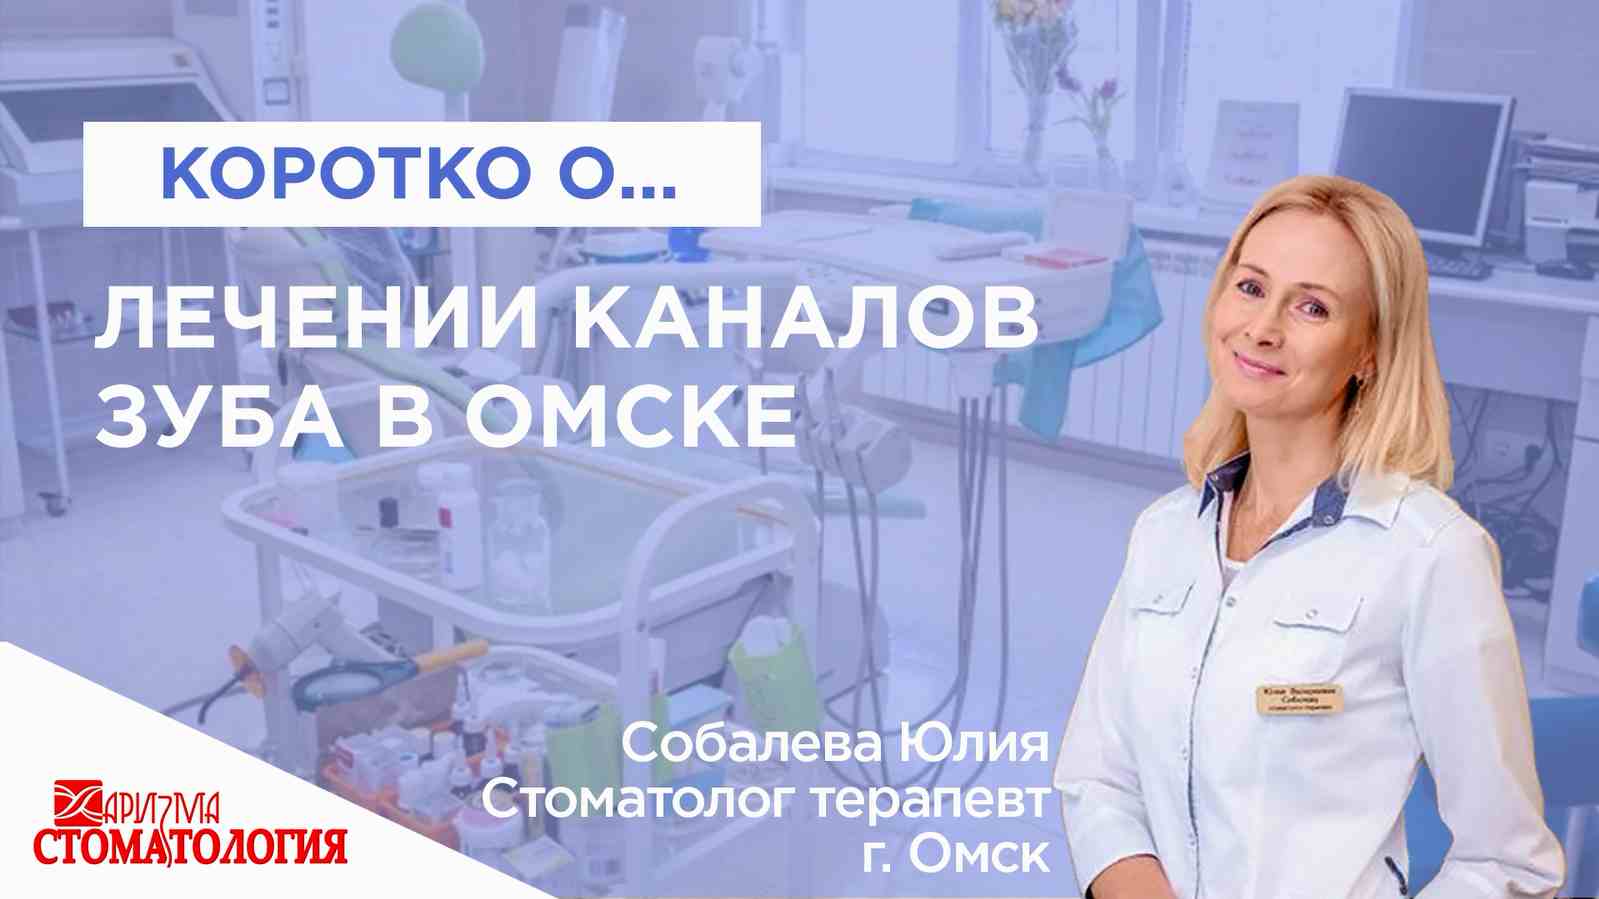 Лечение каналов зуба в Омске по доступной цене в клинике Харизма недорого